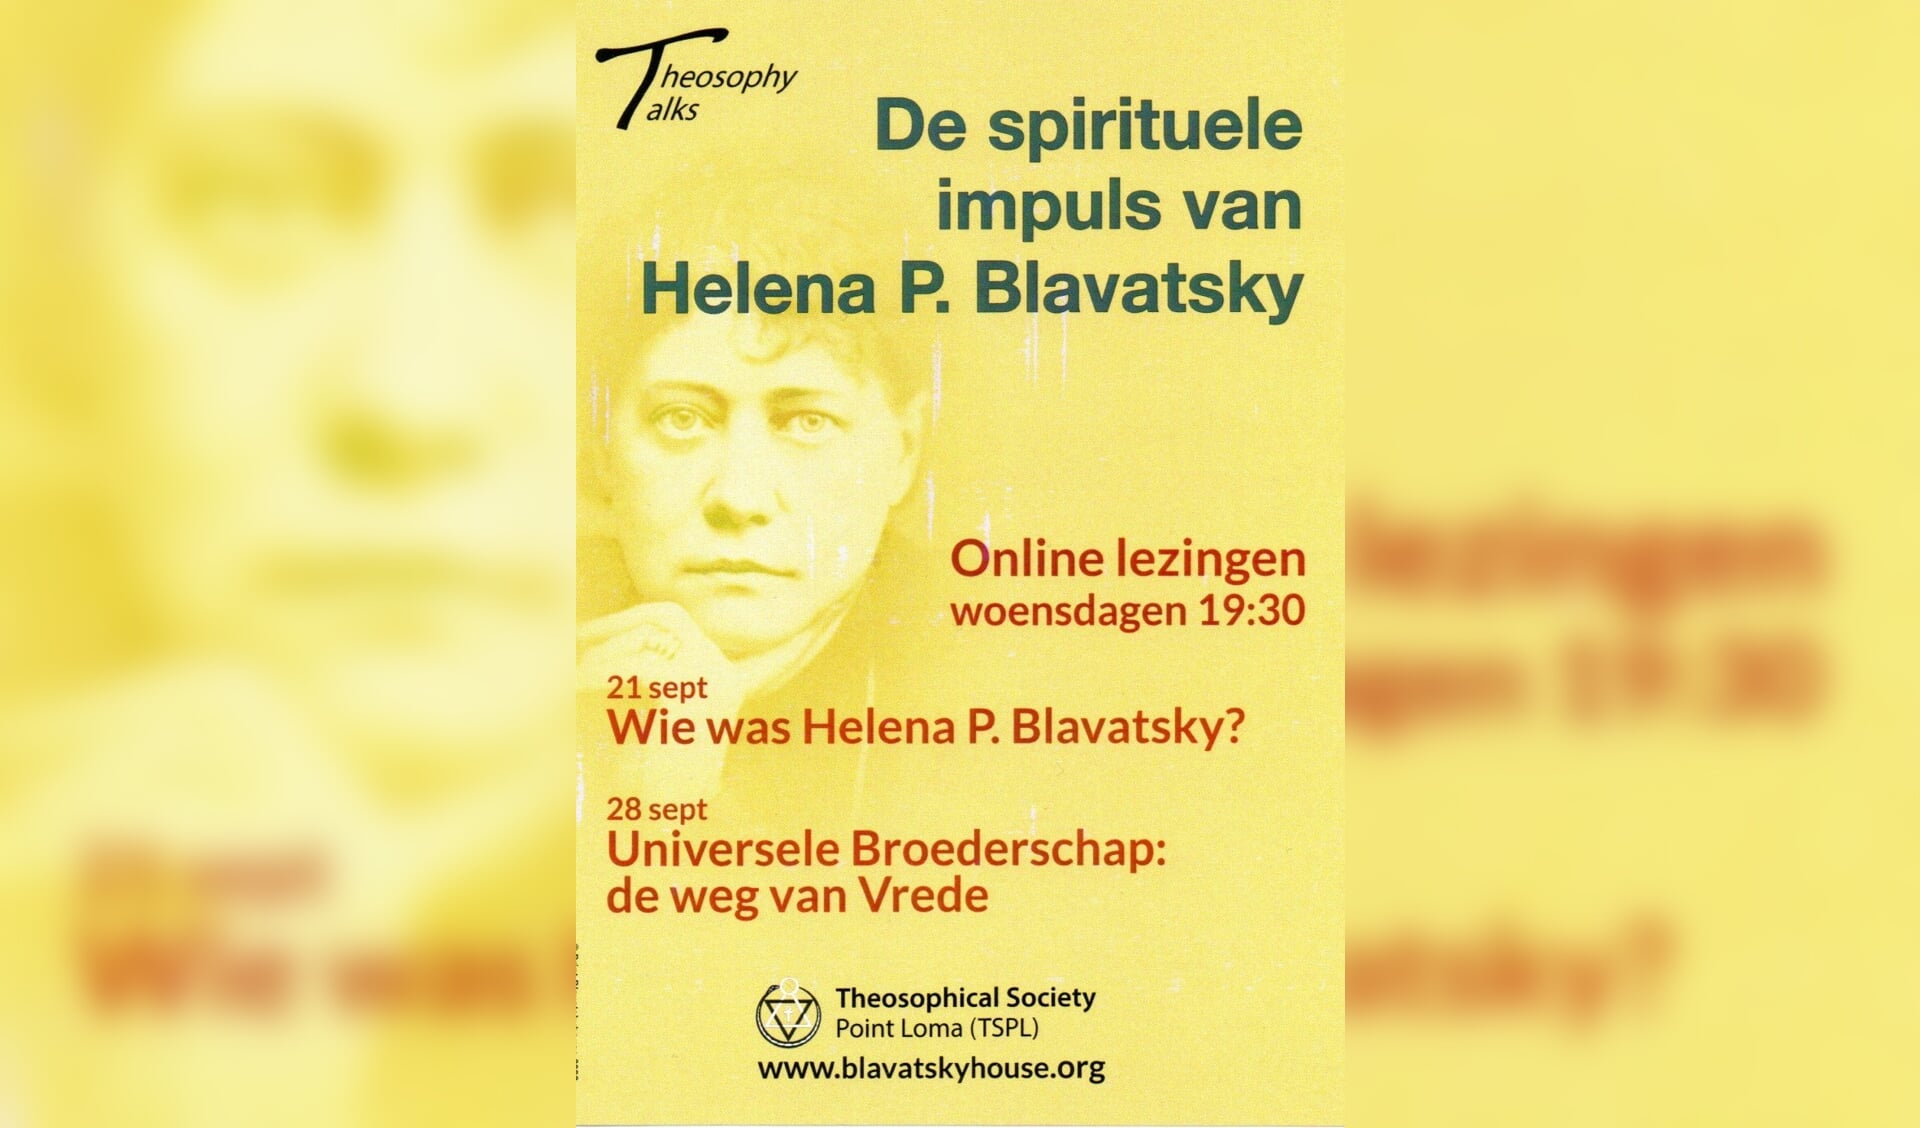 Online lezingen over 'De spirituele impuls van Helena P. Blavatsky'